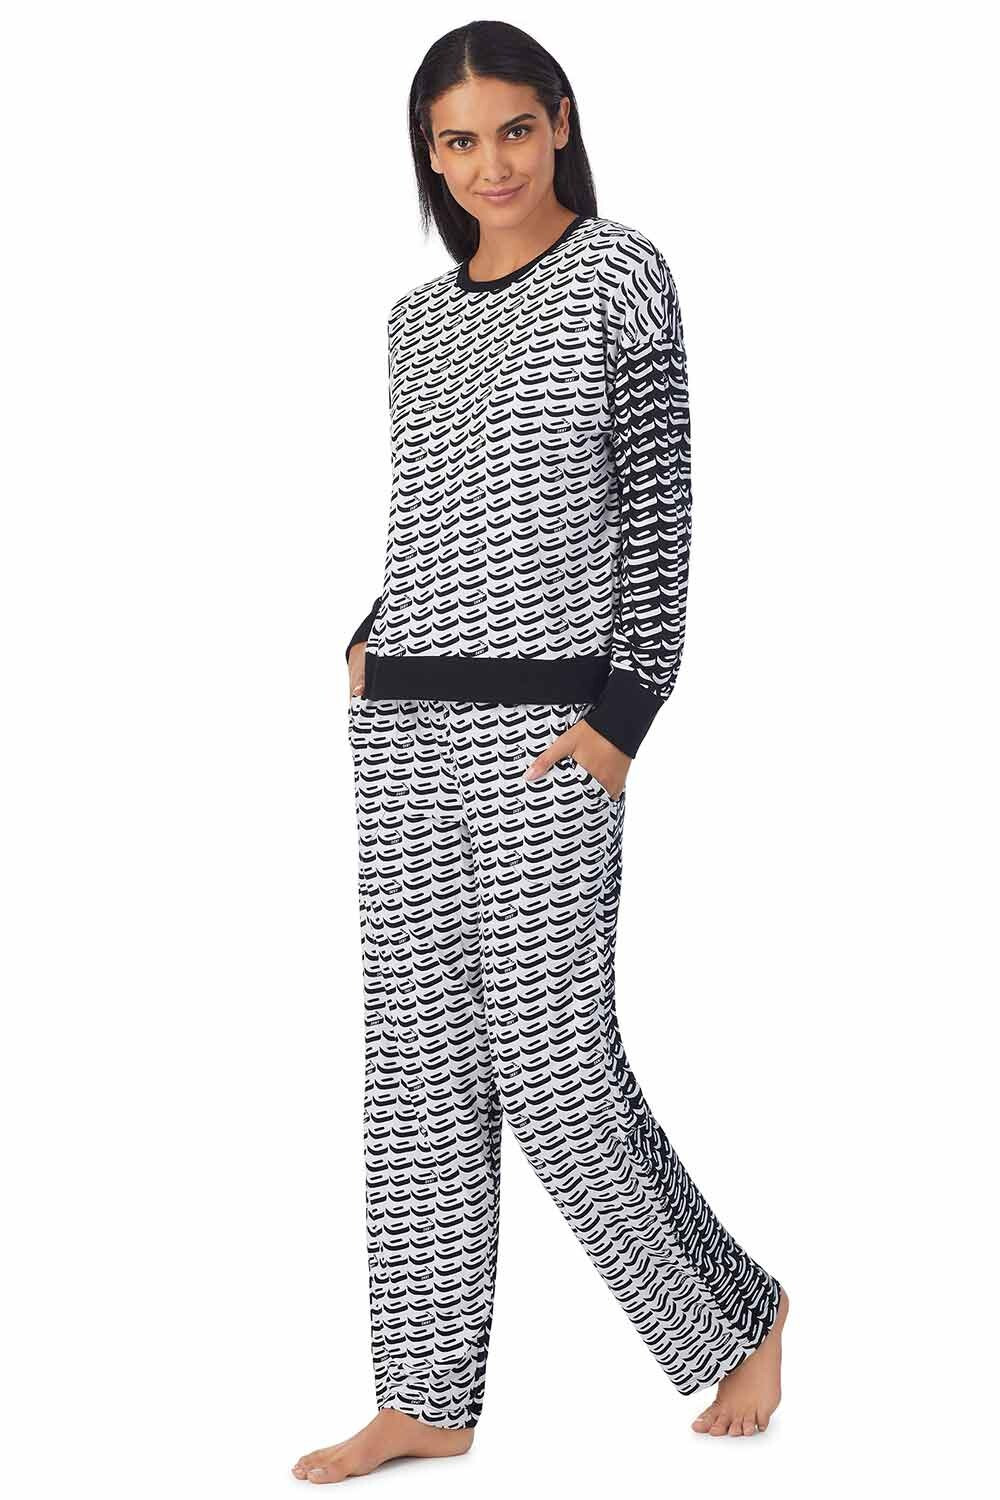 Dámské pyžamo YI2822685F černo bílý vzor - DKNY XS